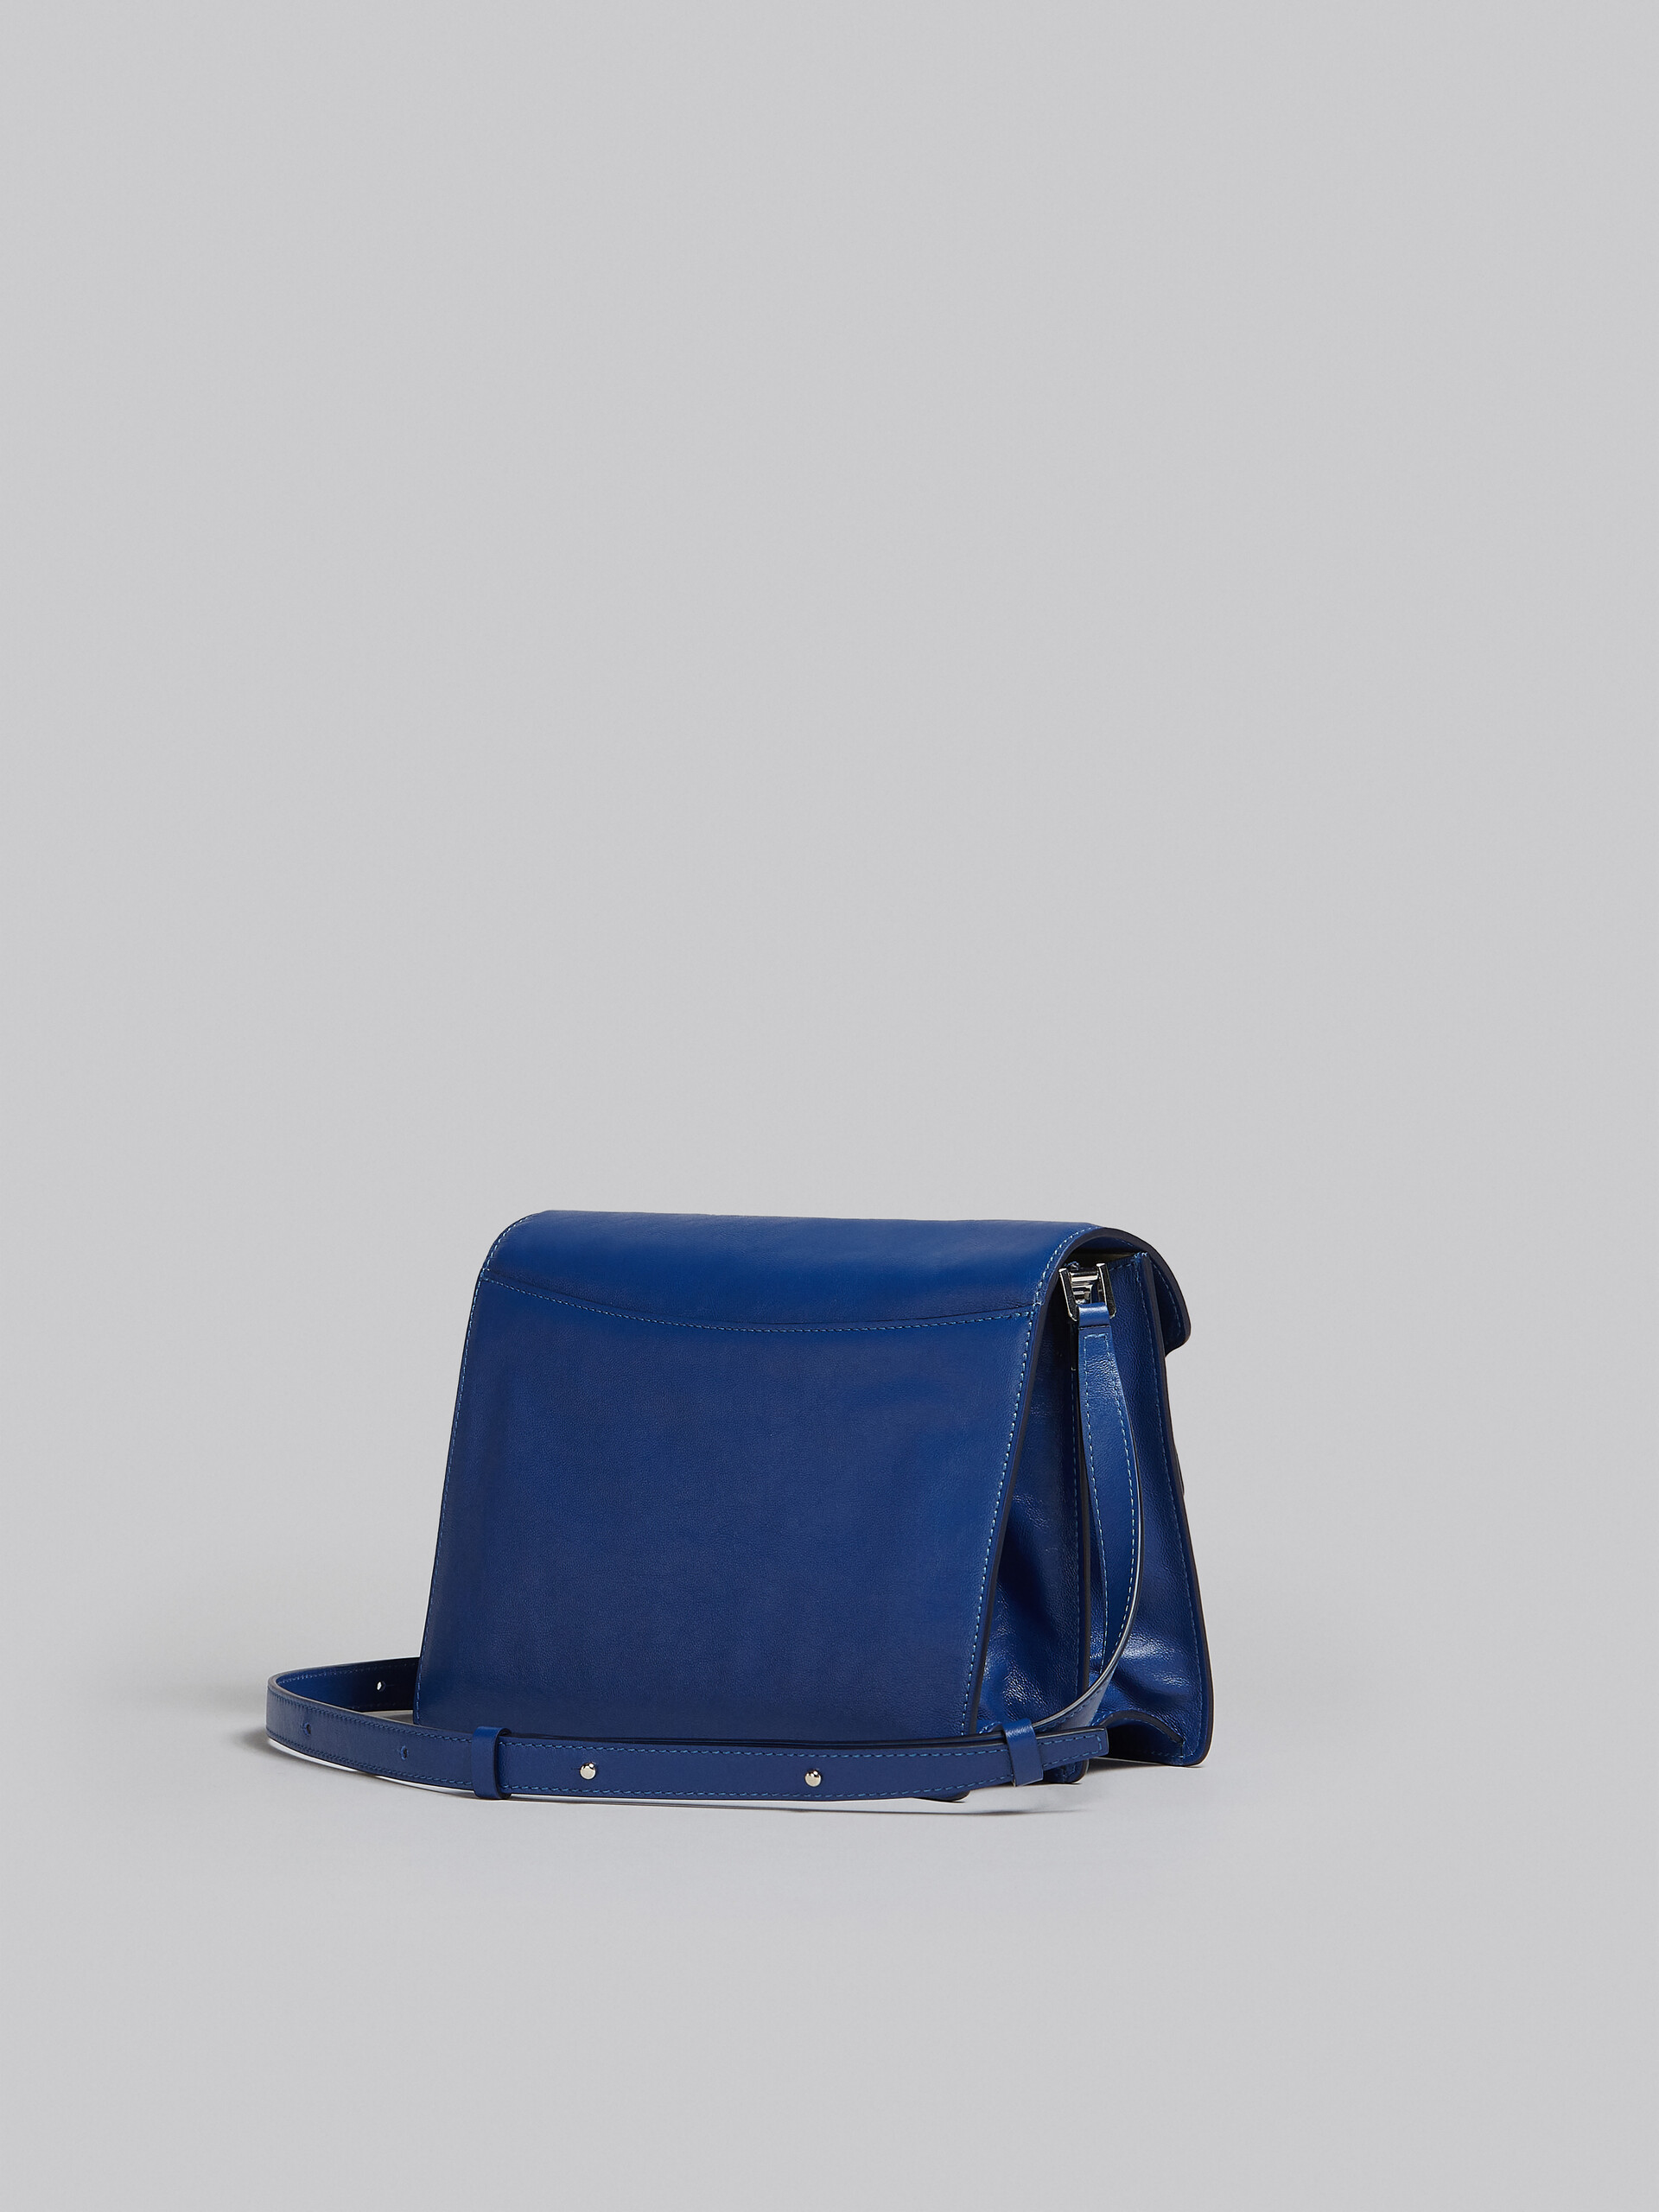 Trunk Soft Large Bag in blue leather - Shoulder Bags - Image 3